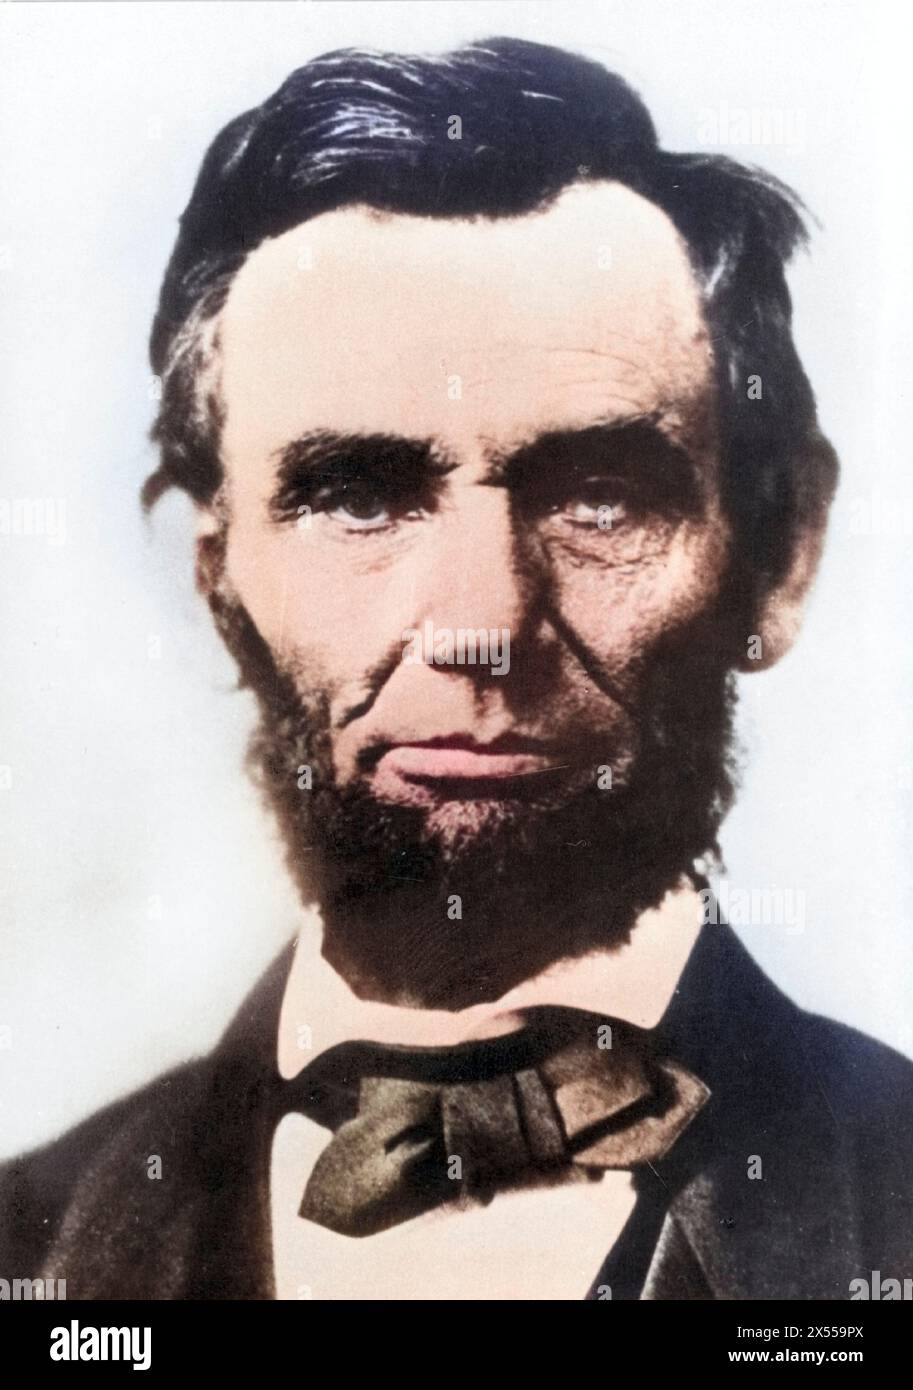 Lincoln, Abraham, 12.2.1809 - 15.4,1865, homme politique américain, 16e président des États-Unis 1861 - 1865, ADDITIONAL-RIGHTS-CLEARANCE-INFO-NOT-AVAILABLE Banque D'Images